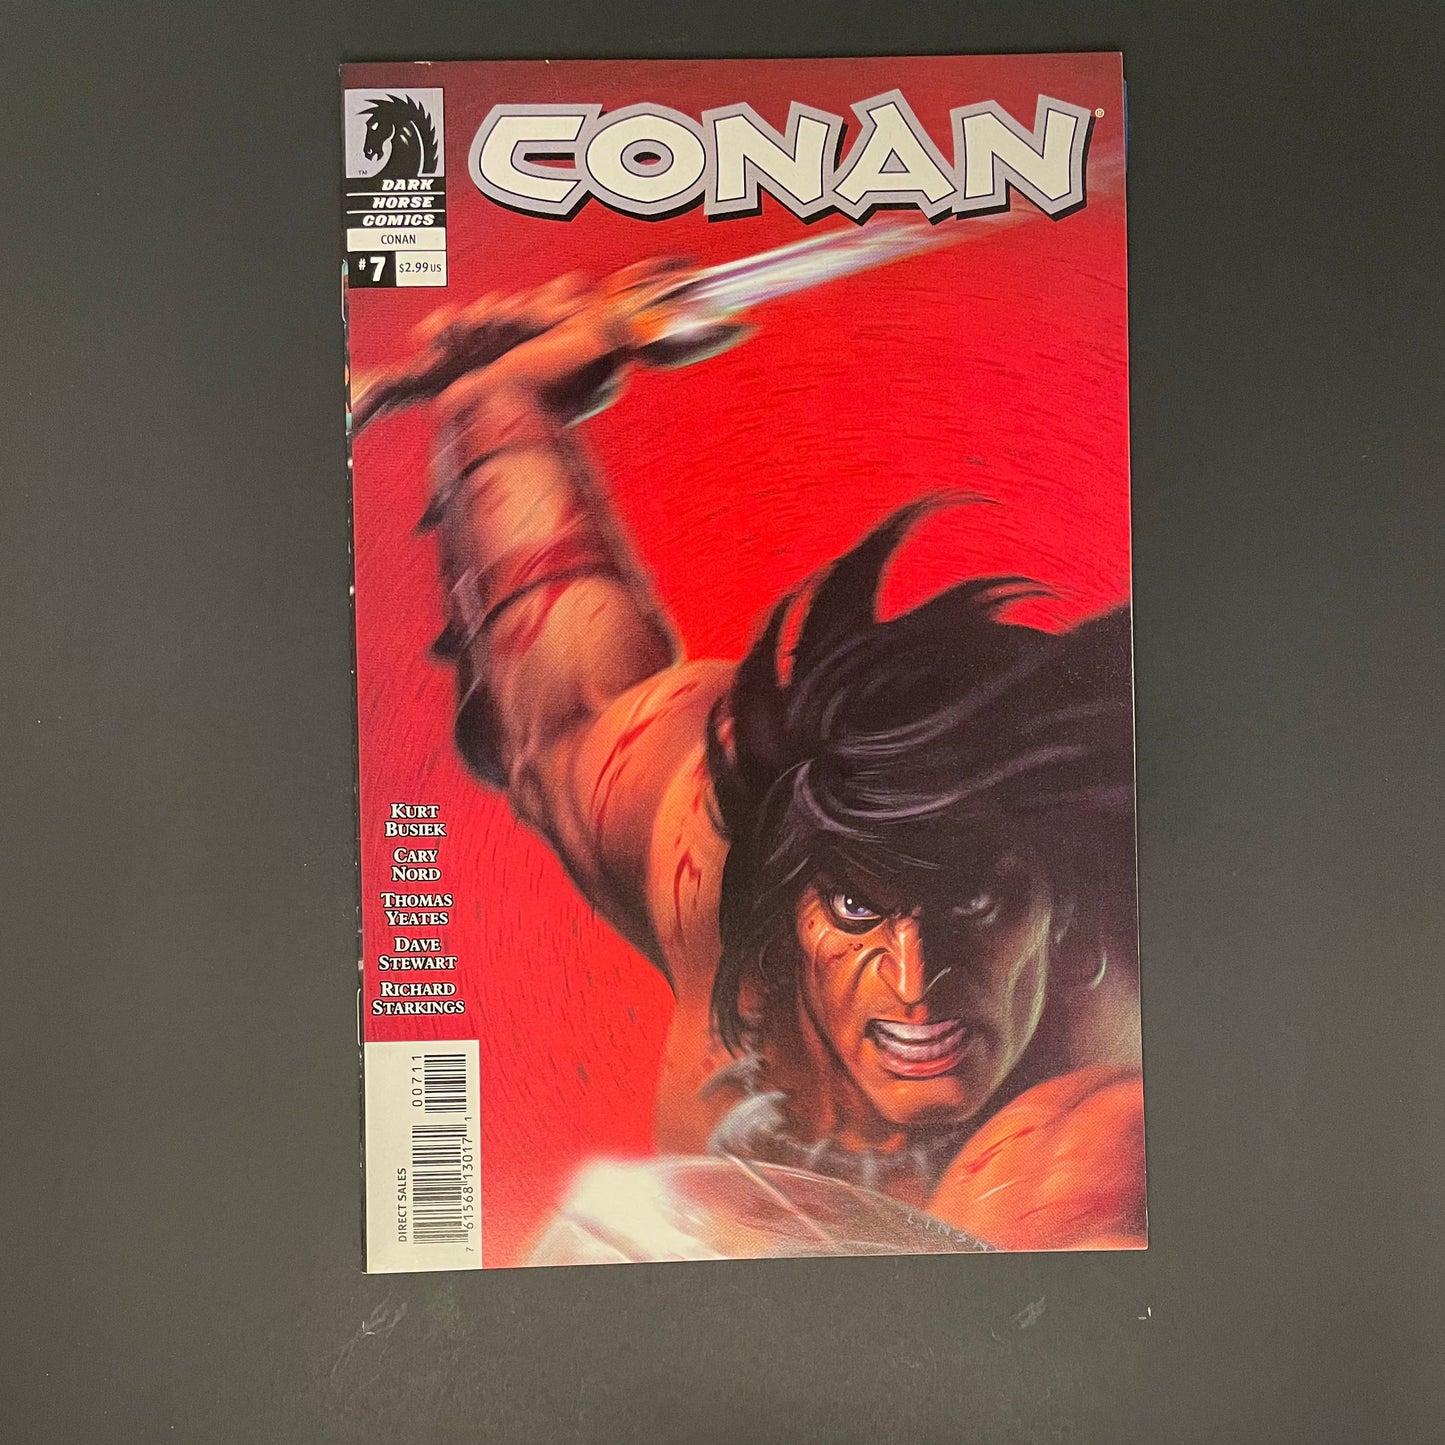 Conan #7